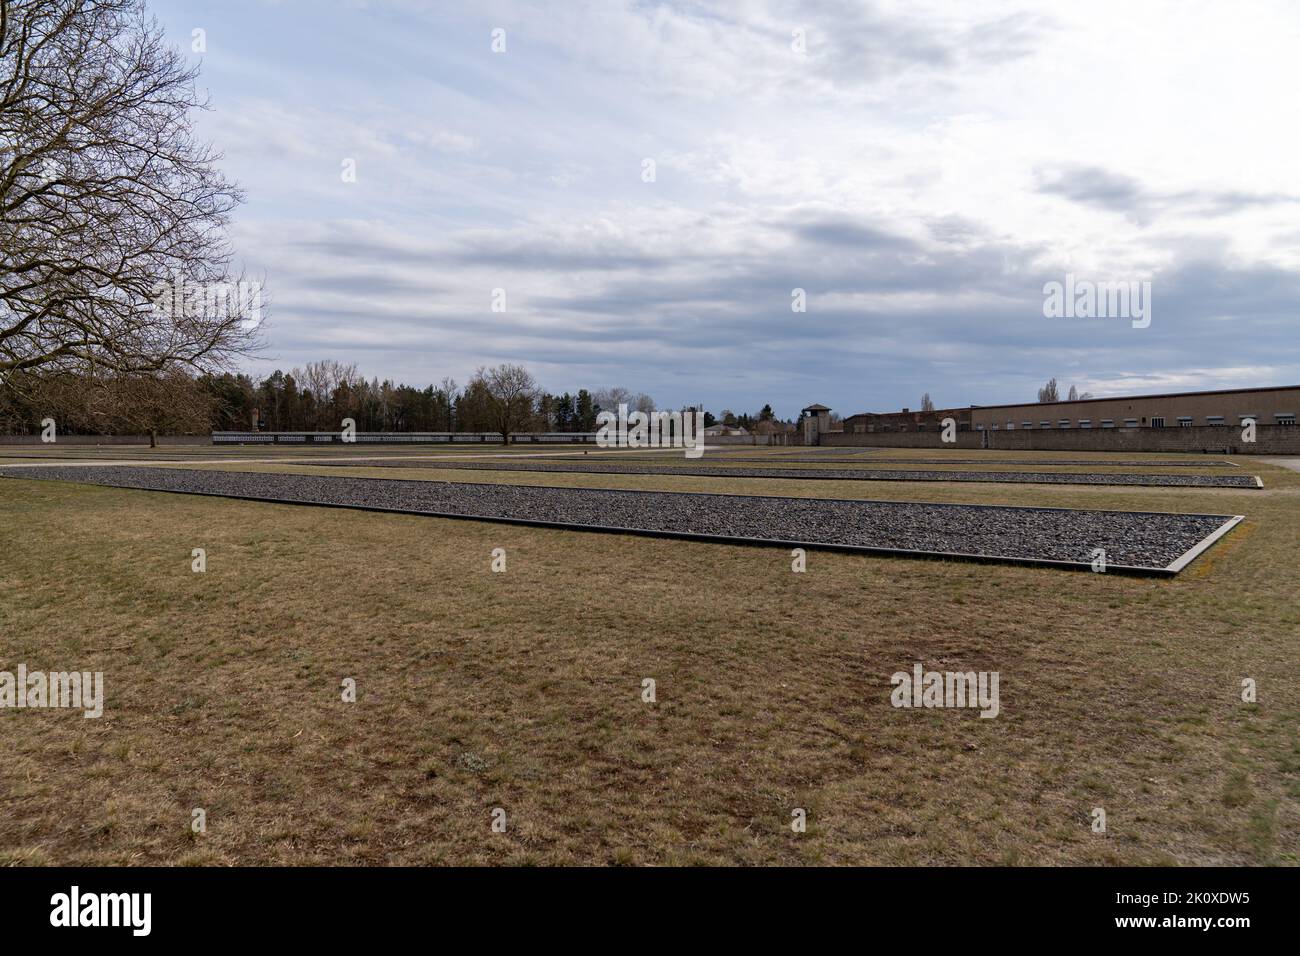 Gedenkstätte und Konzentrationslager Sachsenhausen in Oranienburg Stock Photo